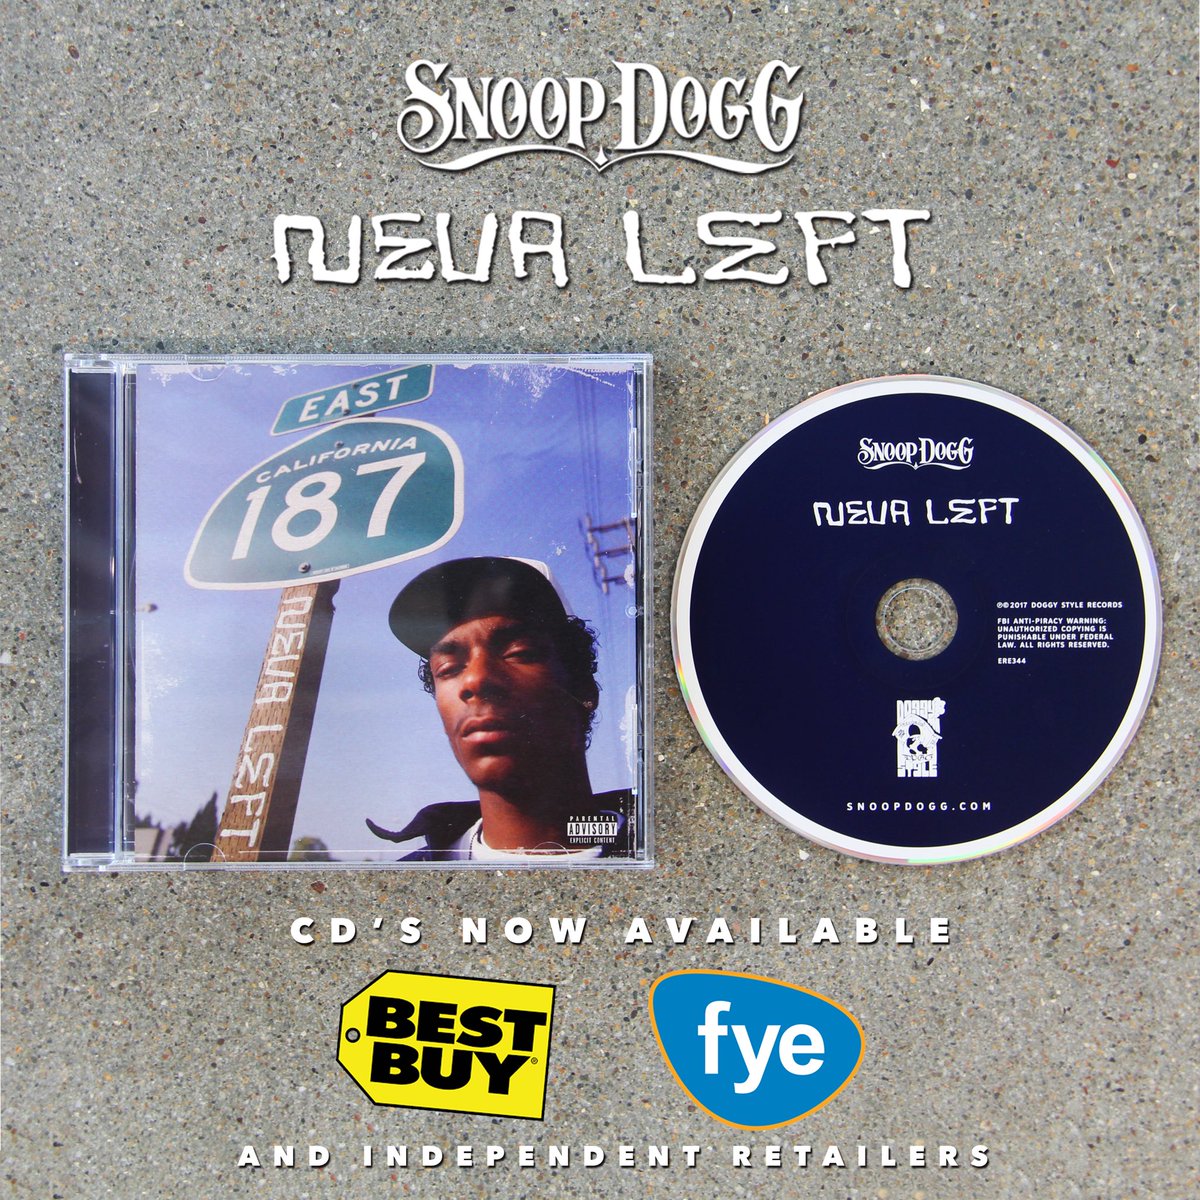 #NevaLeft in stores now !! album signing this Fri @amoebamusic hollywood https://t.co/PEOiyibBHg